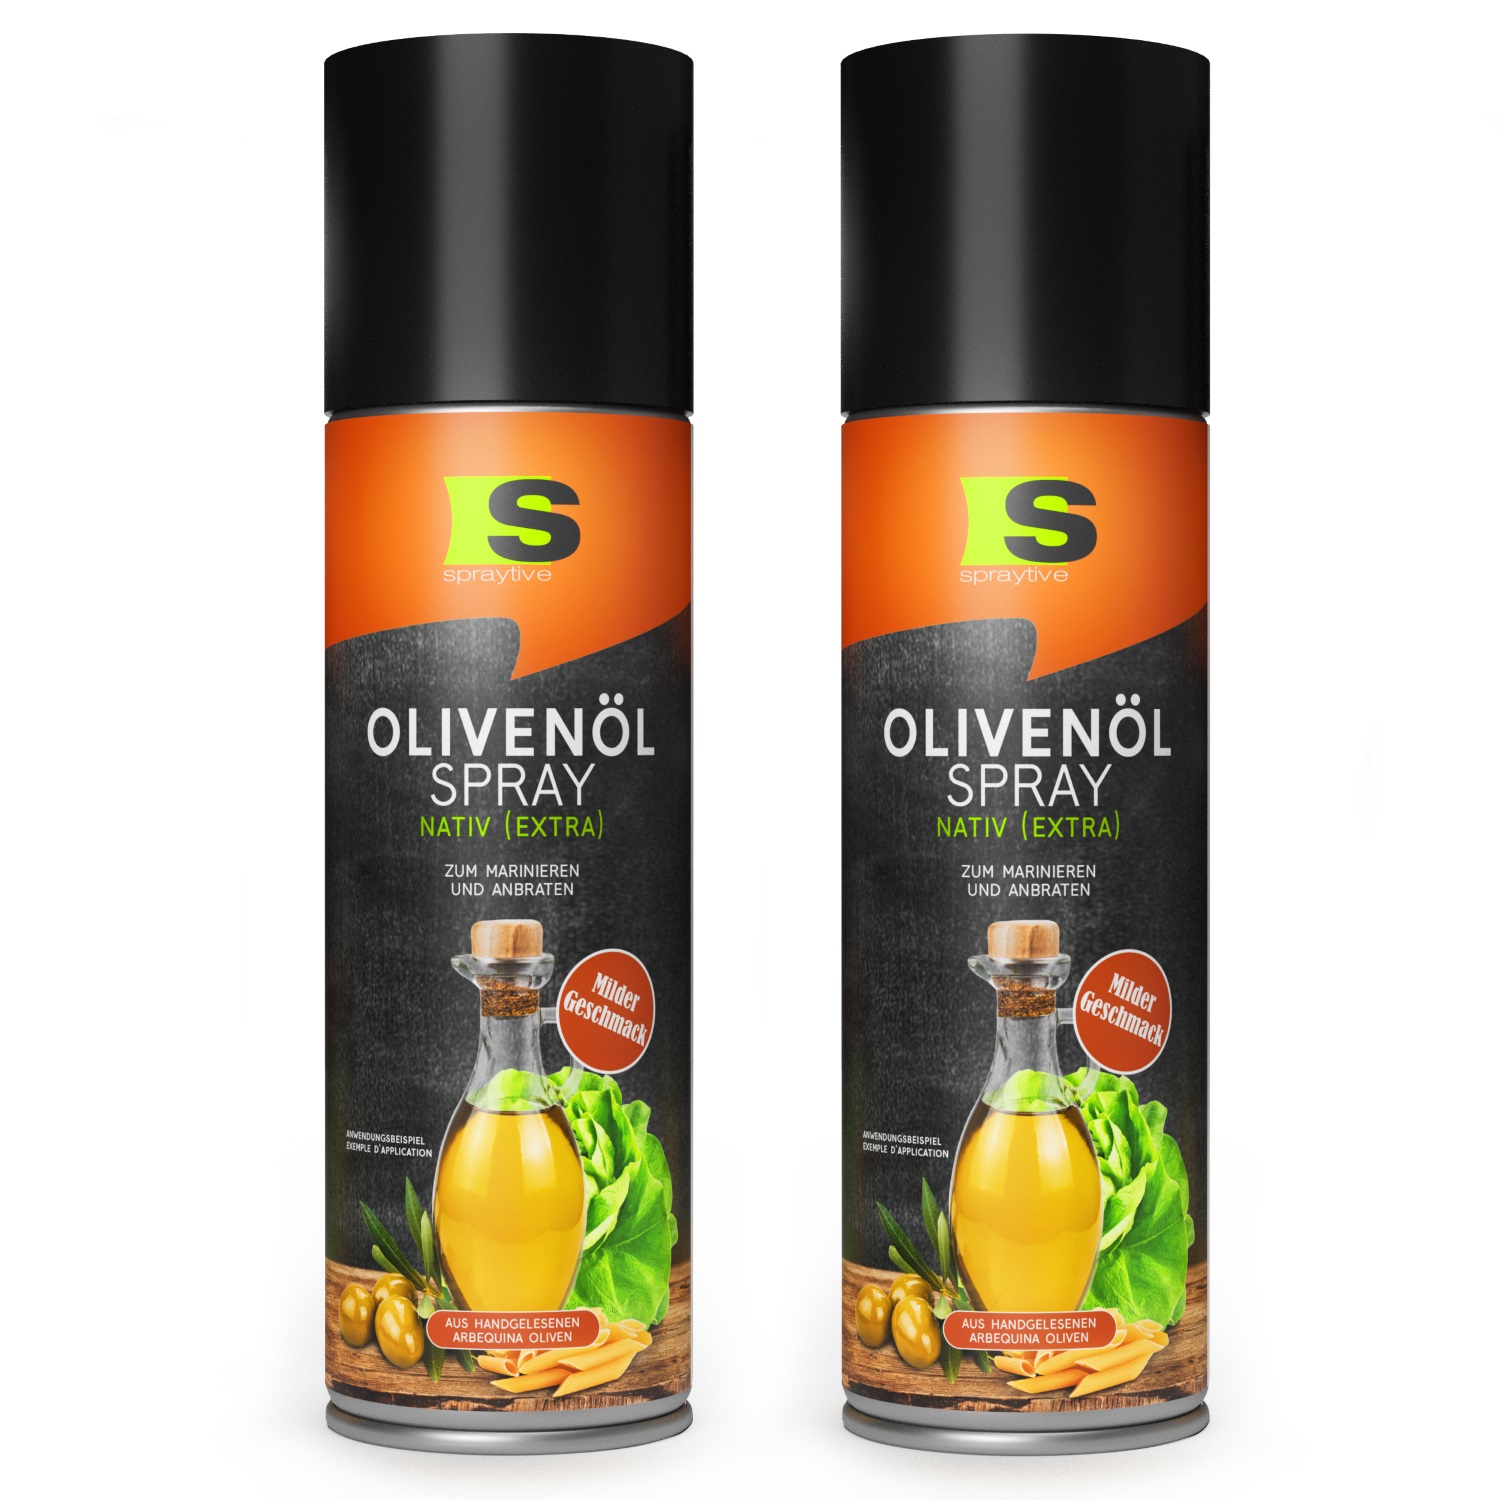 2 x 400ml Olivenöl Spray Nativ (Extra) - Zum Marinieren und Anbraten